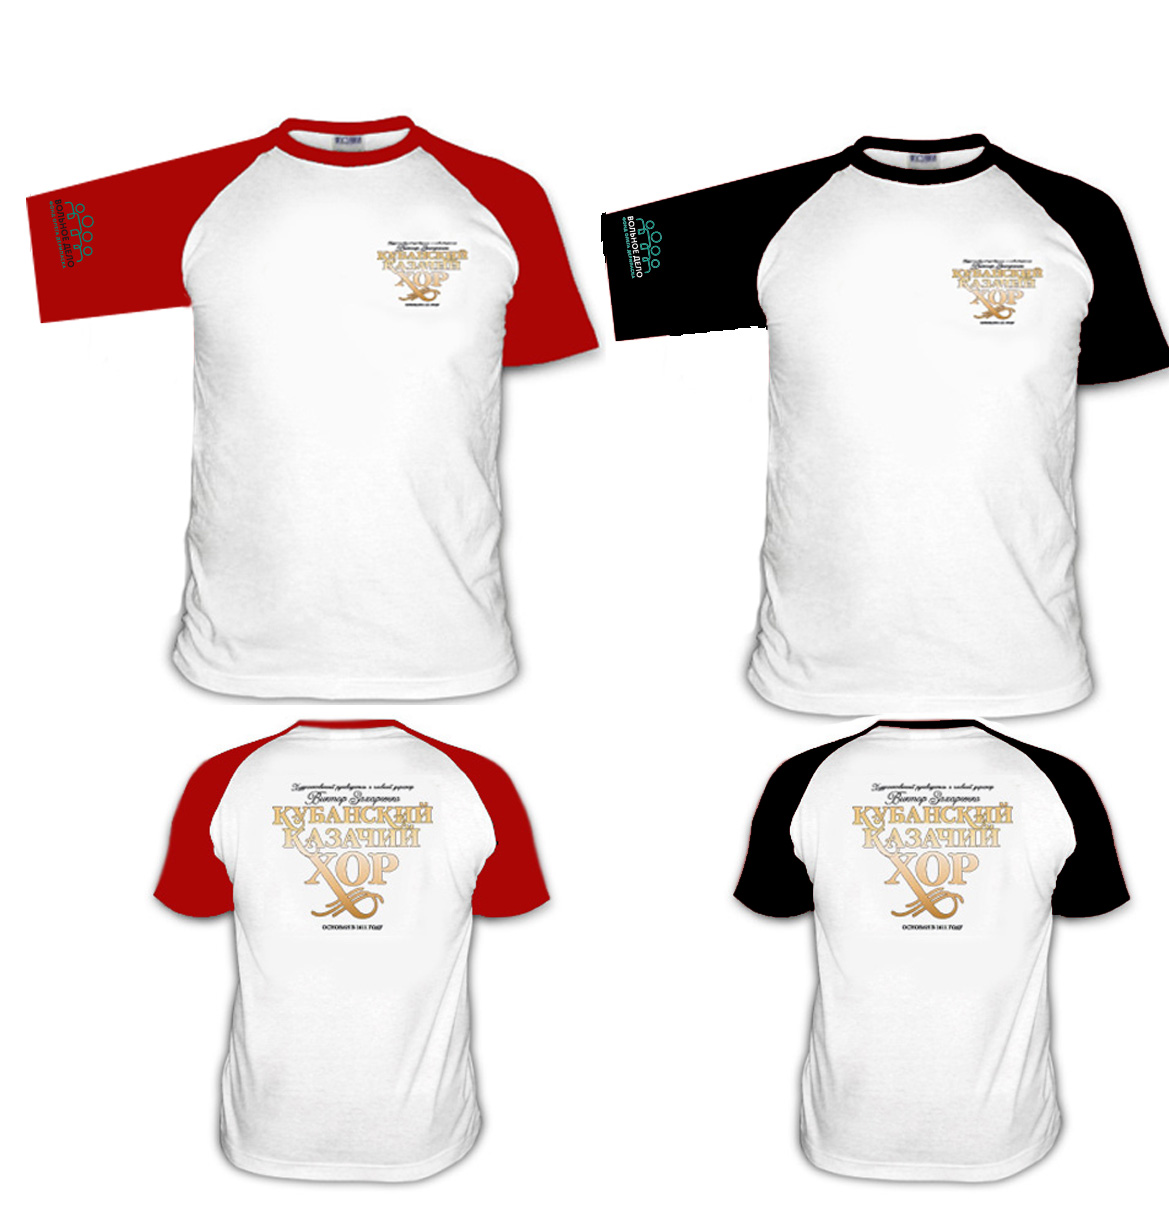 Фирменная футболка ККХ с трафаретной печатью (чёрно-белая, красно-белая)